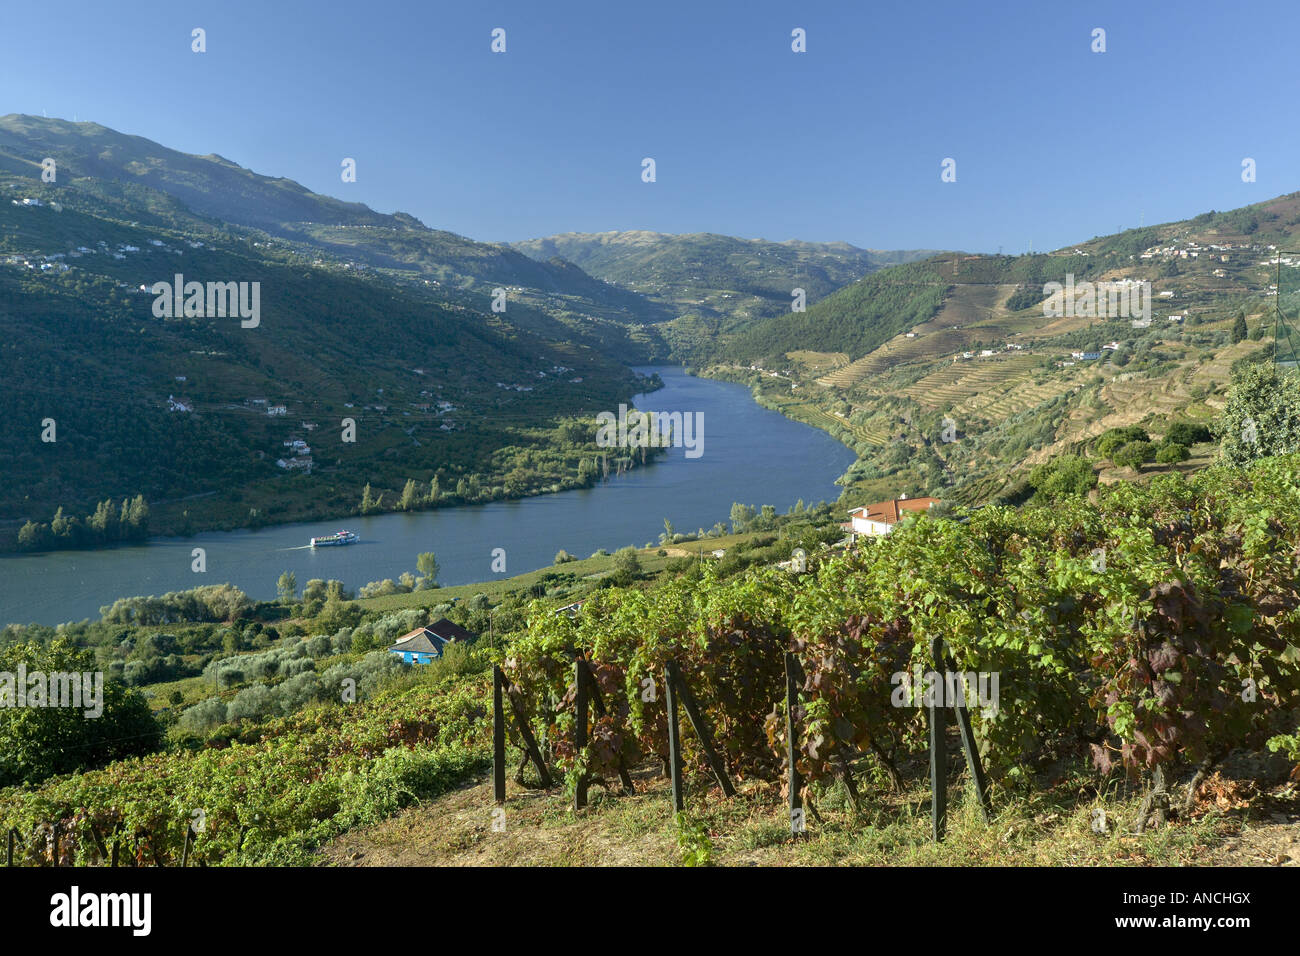 Portugal La région de l'Alto Douro le Douro les collines couvertes de vignobles. Les vignes produisent des raisins pour le vin Banque D'Images